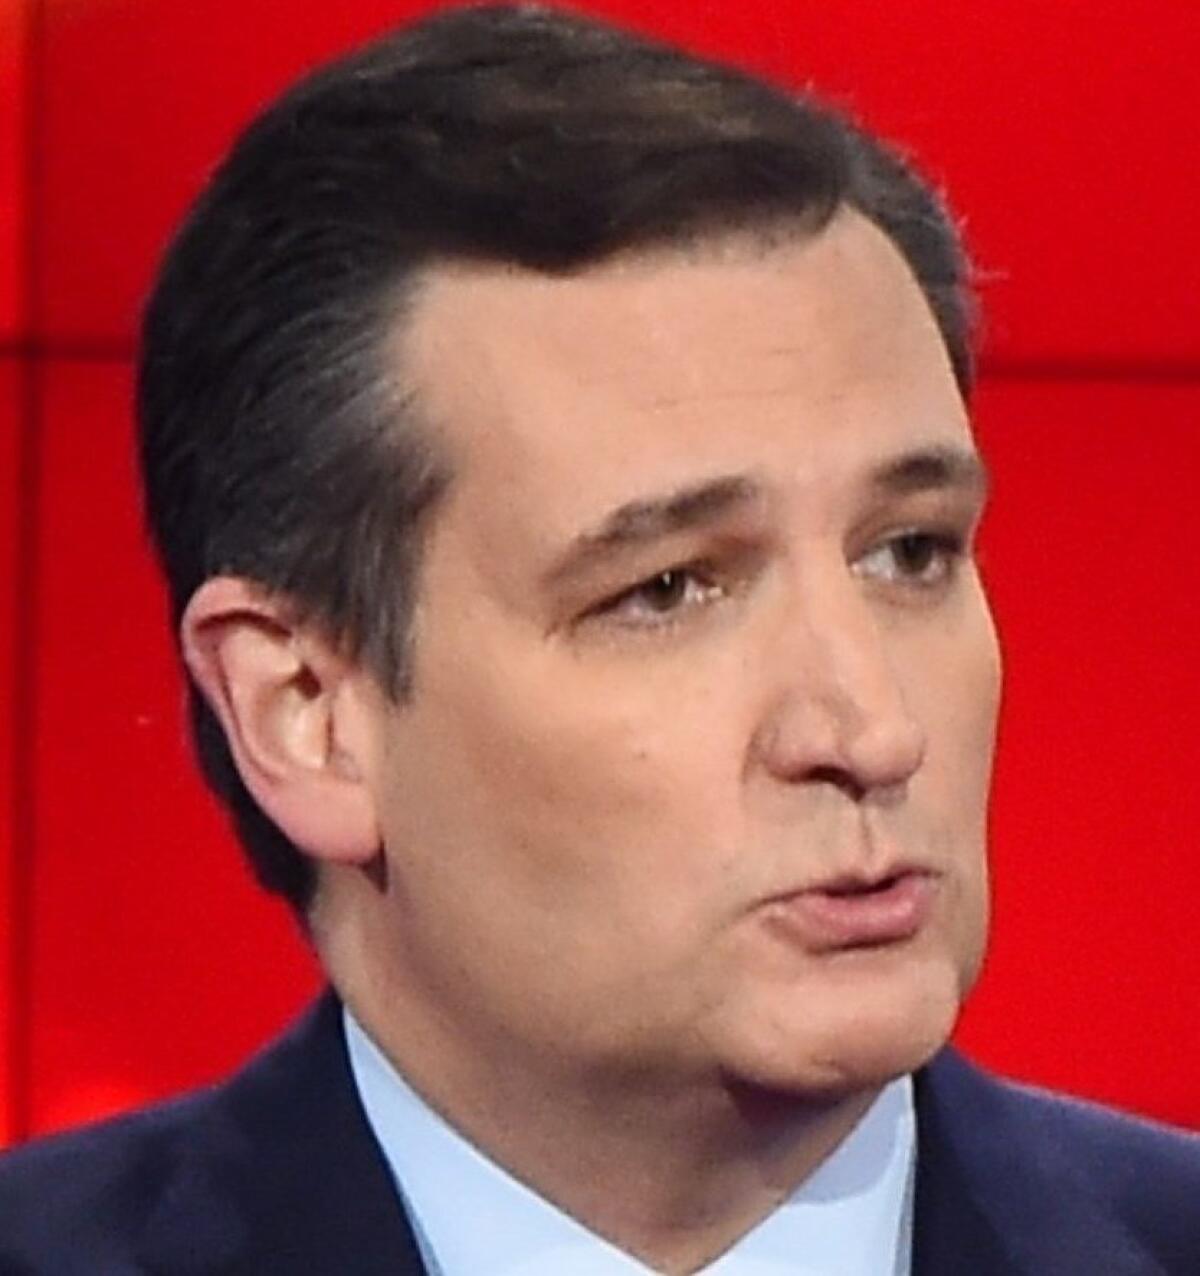 Texas Sen. Ted Cruz speaks during the Republican presidential debate in Las Vegas on Dec. 15.